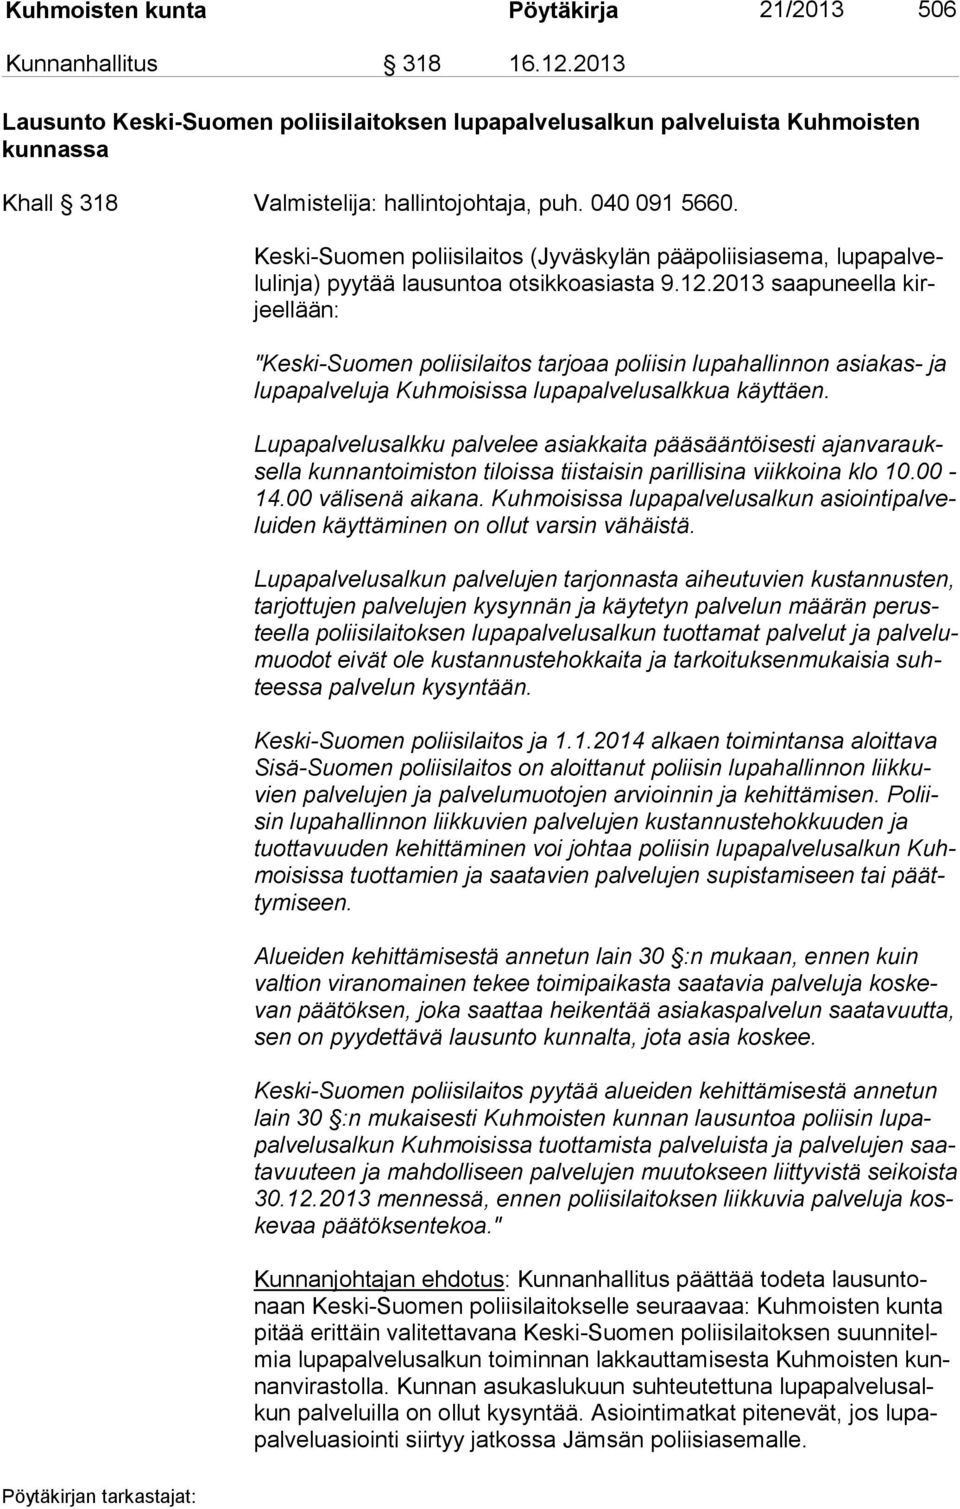 Keski-Suomen poliisilaitos (Jyväskylän pääpoliisiasema, lu pa pal velu lin ja) pyytää lausuntoa otsikkoasiasta 9.12.